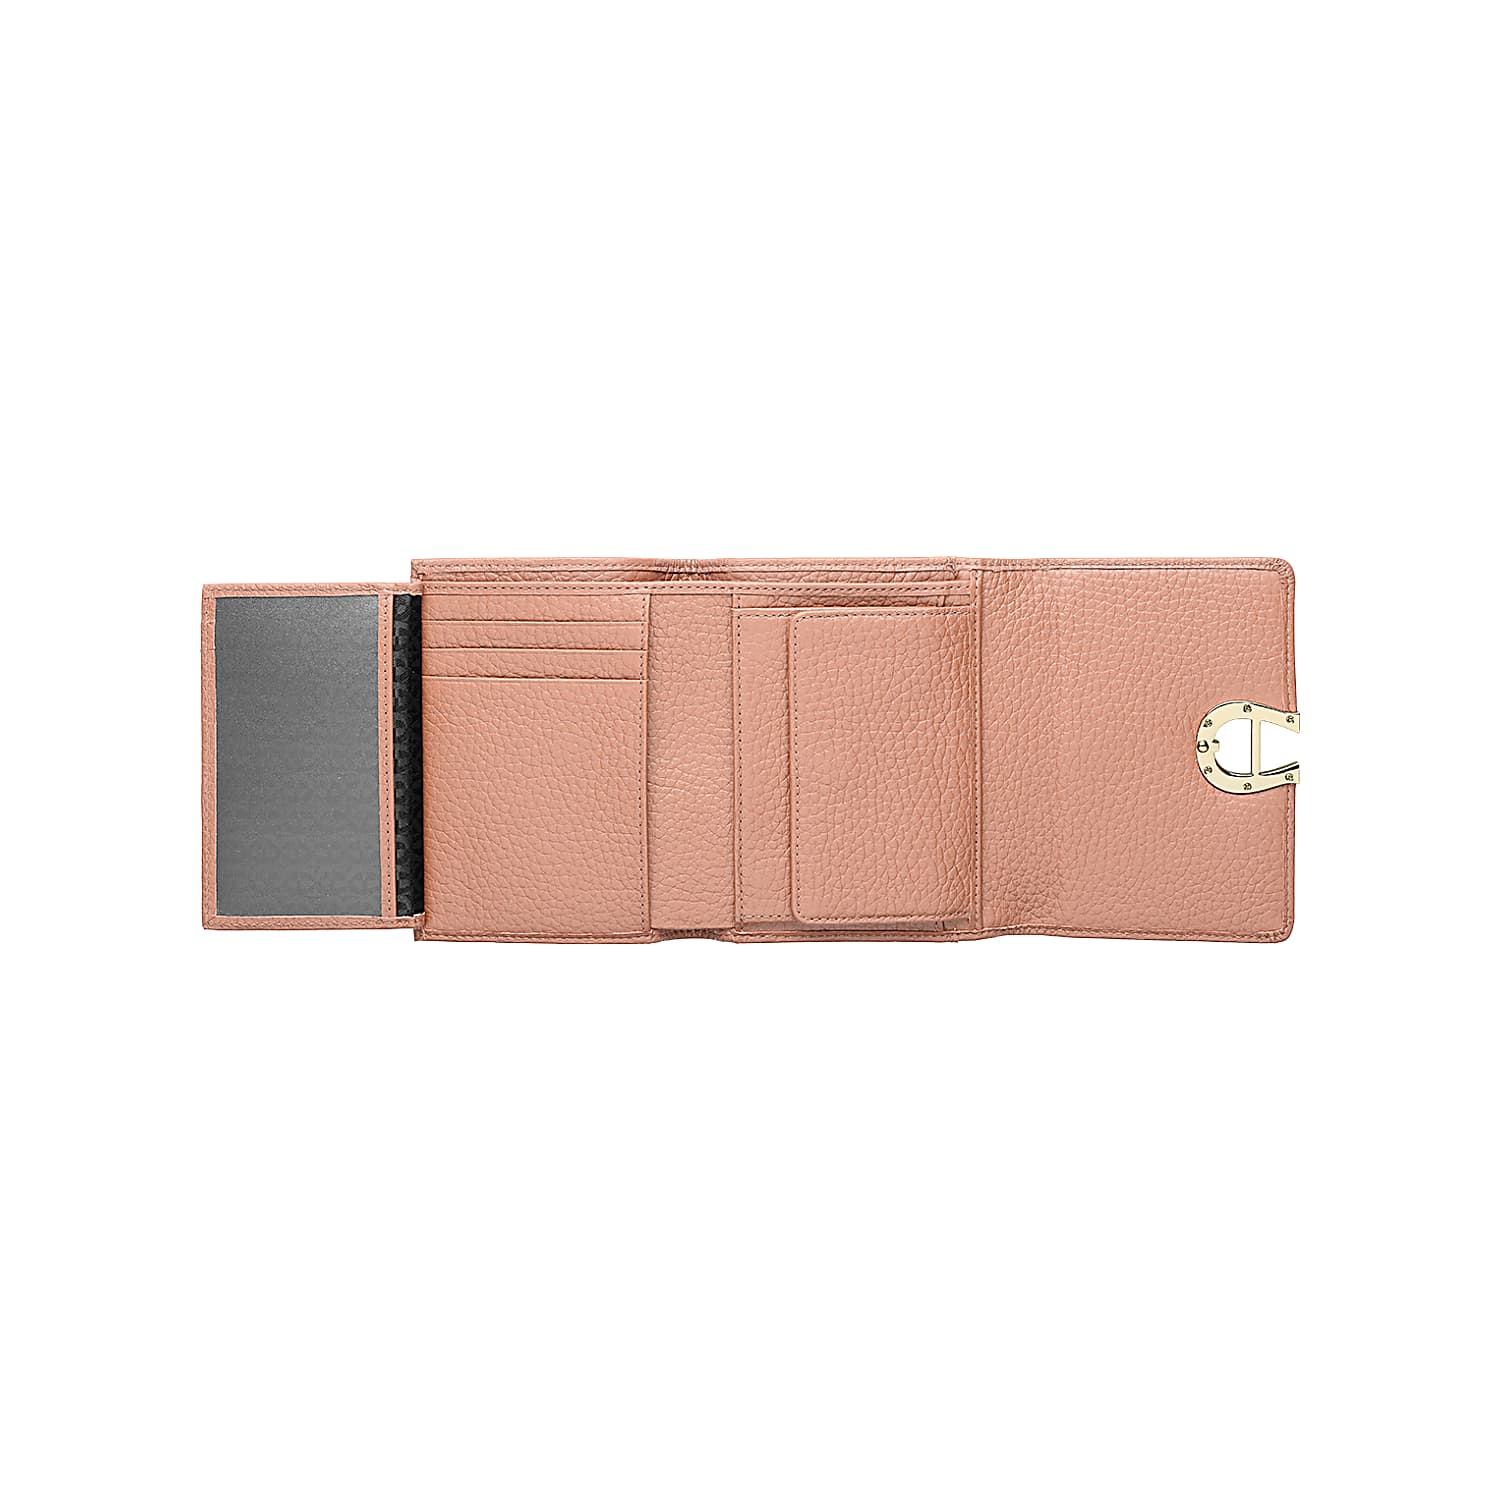 Milano combination wallet